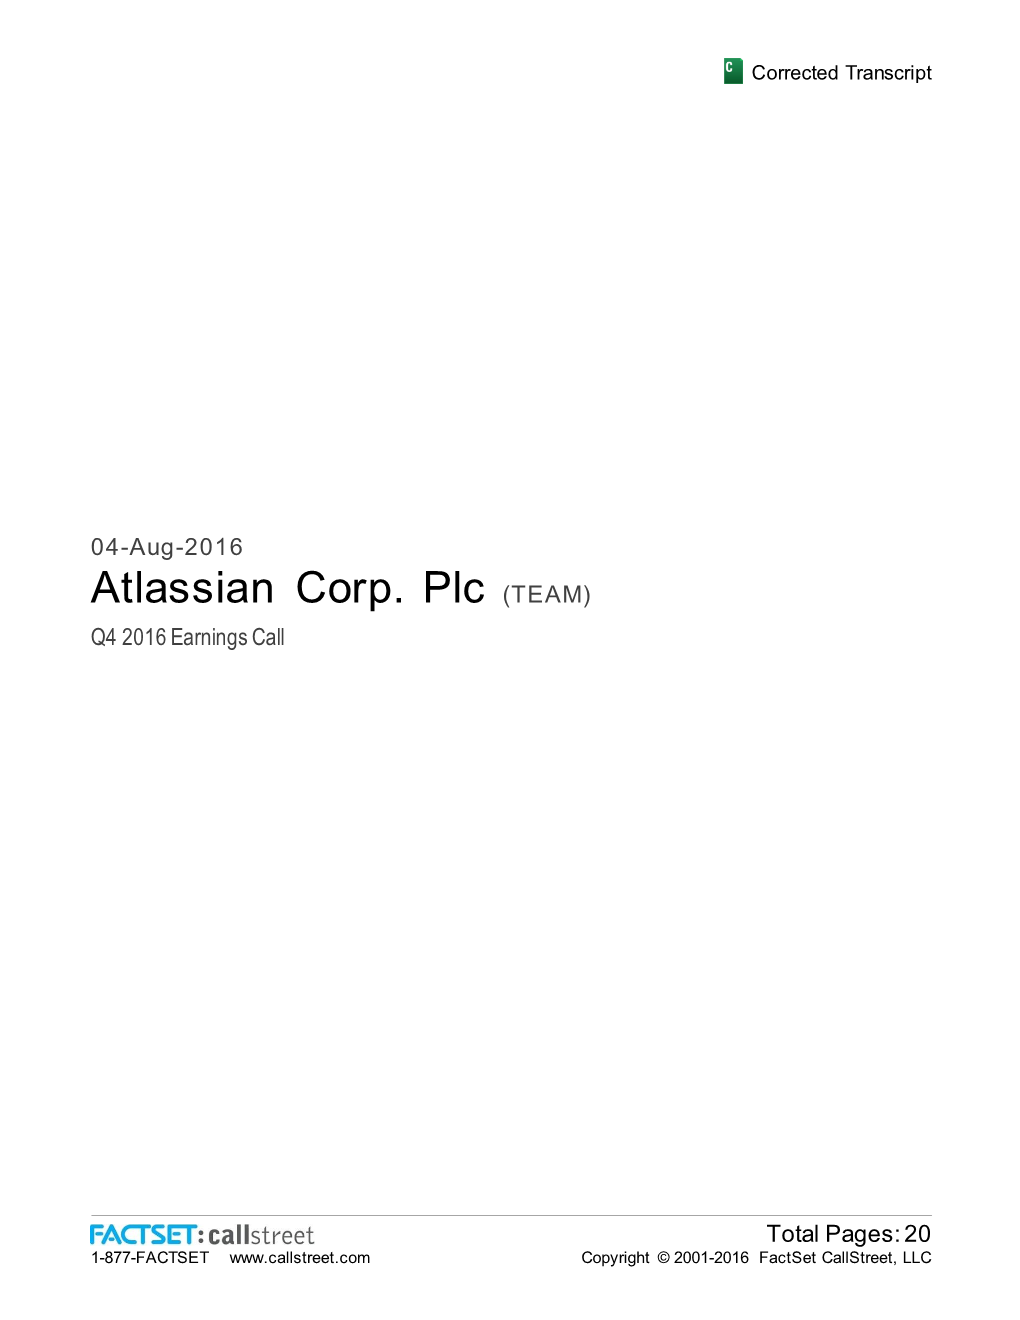 Atlassian Corp. Plc (TEAM) Q4 2016 Earnings Call